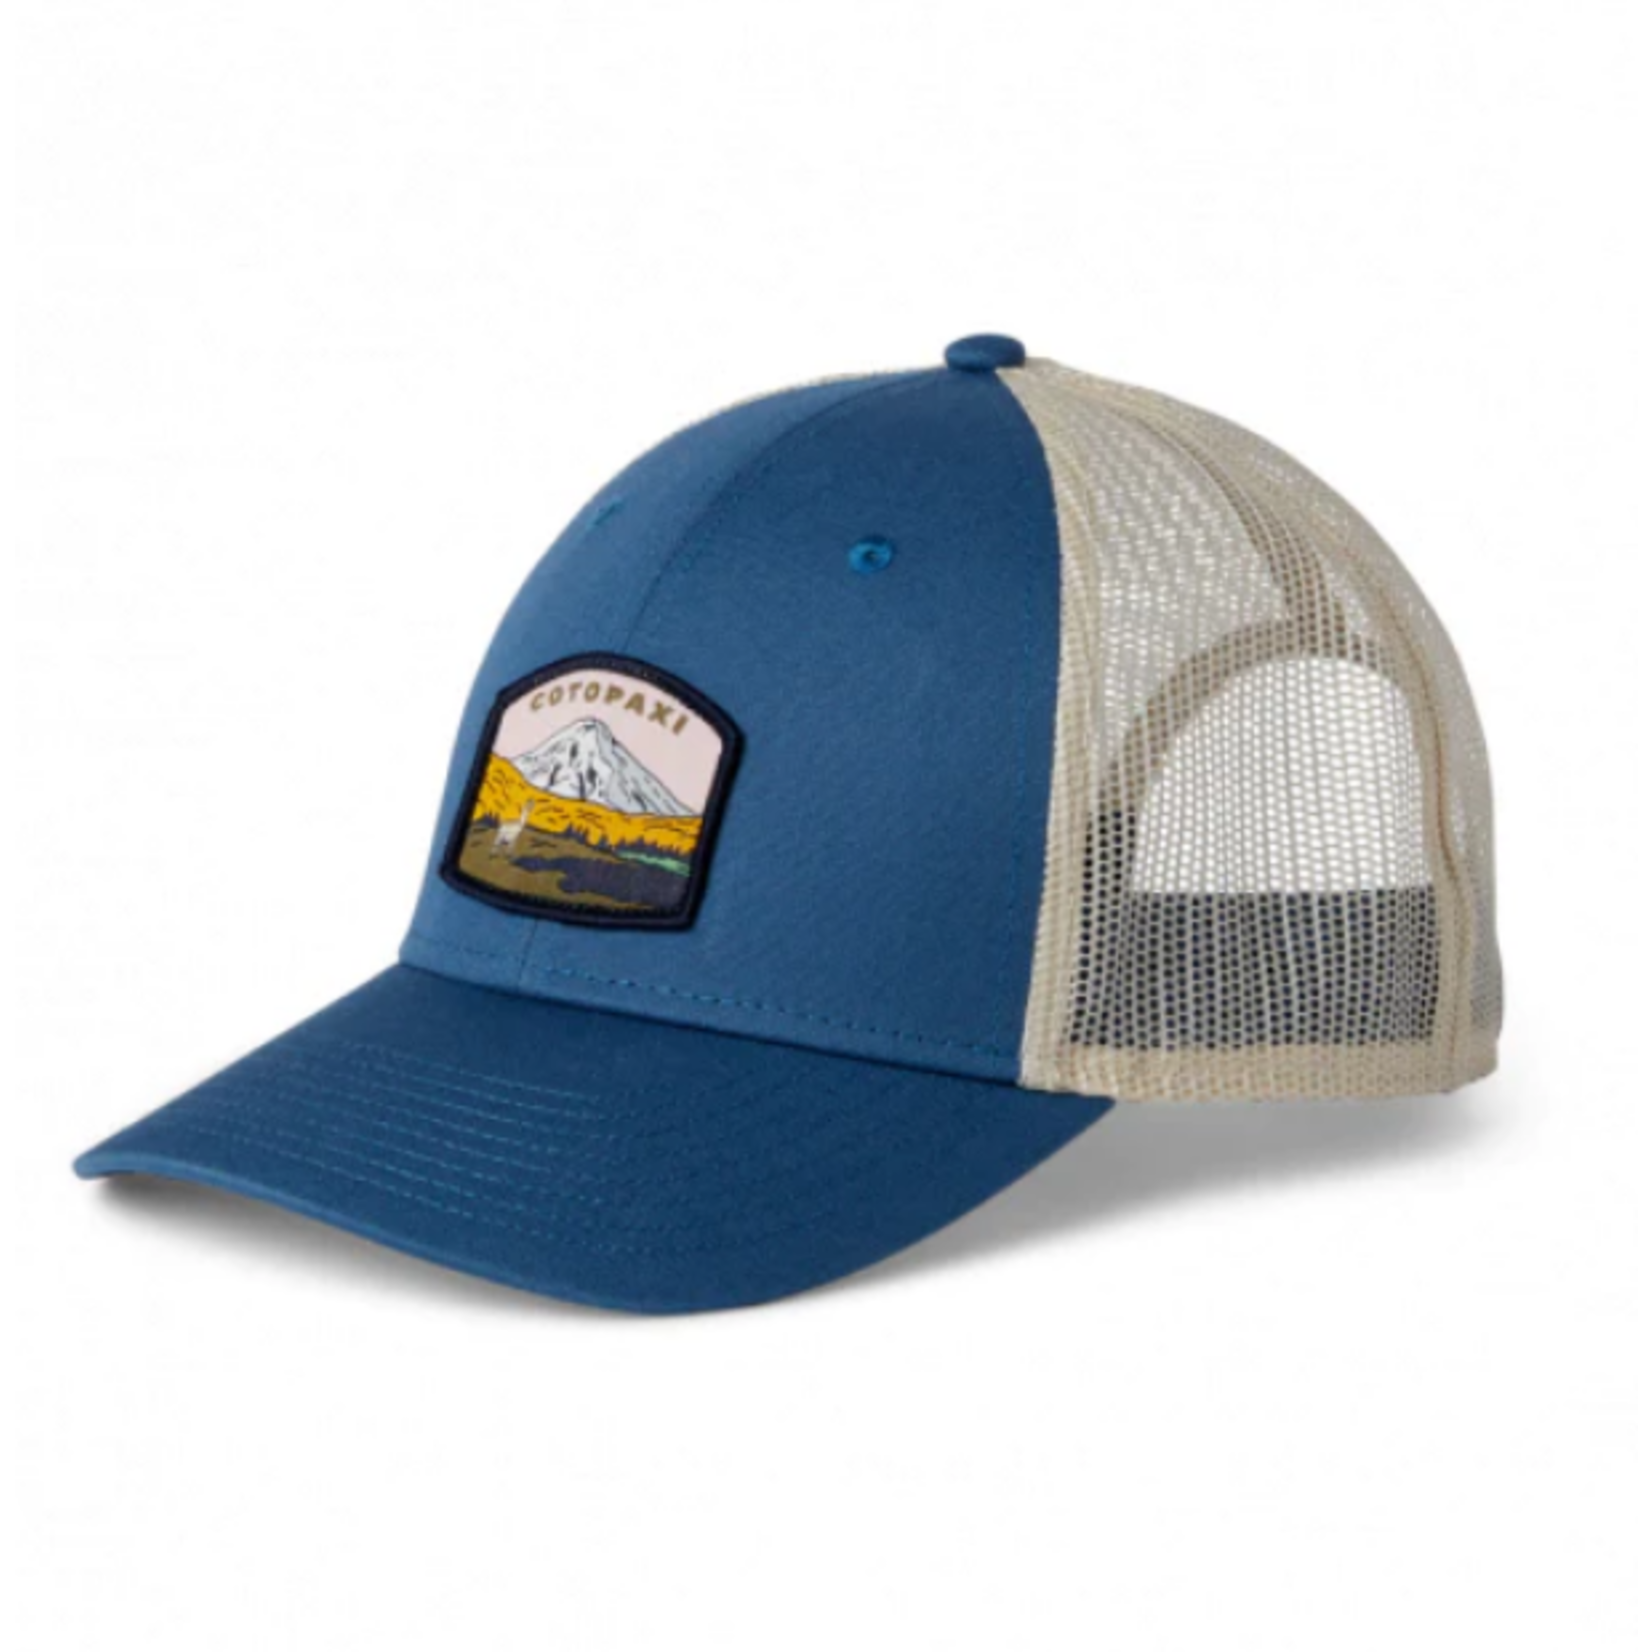 Cotopaxi Cotopaxi Llamascape Trucker Hat